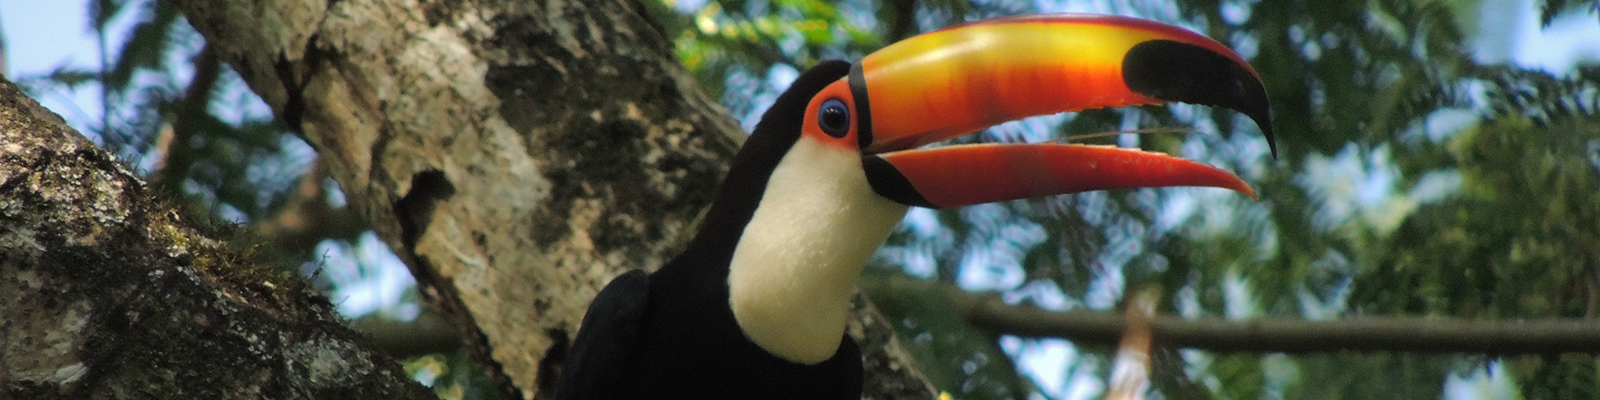 Los colores de la naturaleza en vuelo libre. Luiz Ricardo Galhardo. Perfil de un pájaro tucán, de color negro y pecho blanco, con pico amarillo y negro, ojos azules y negros, posado en el tronco de un árbol.